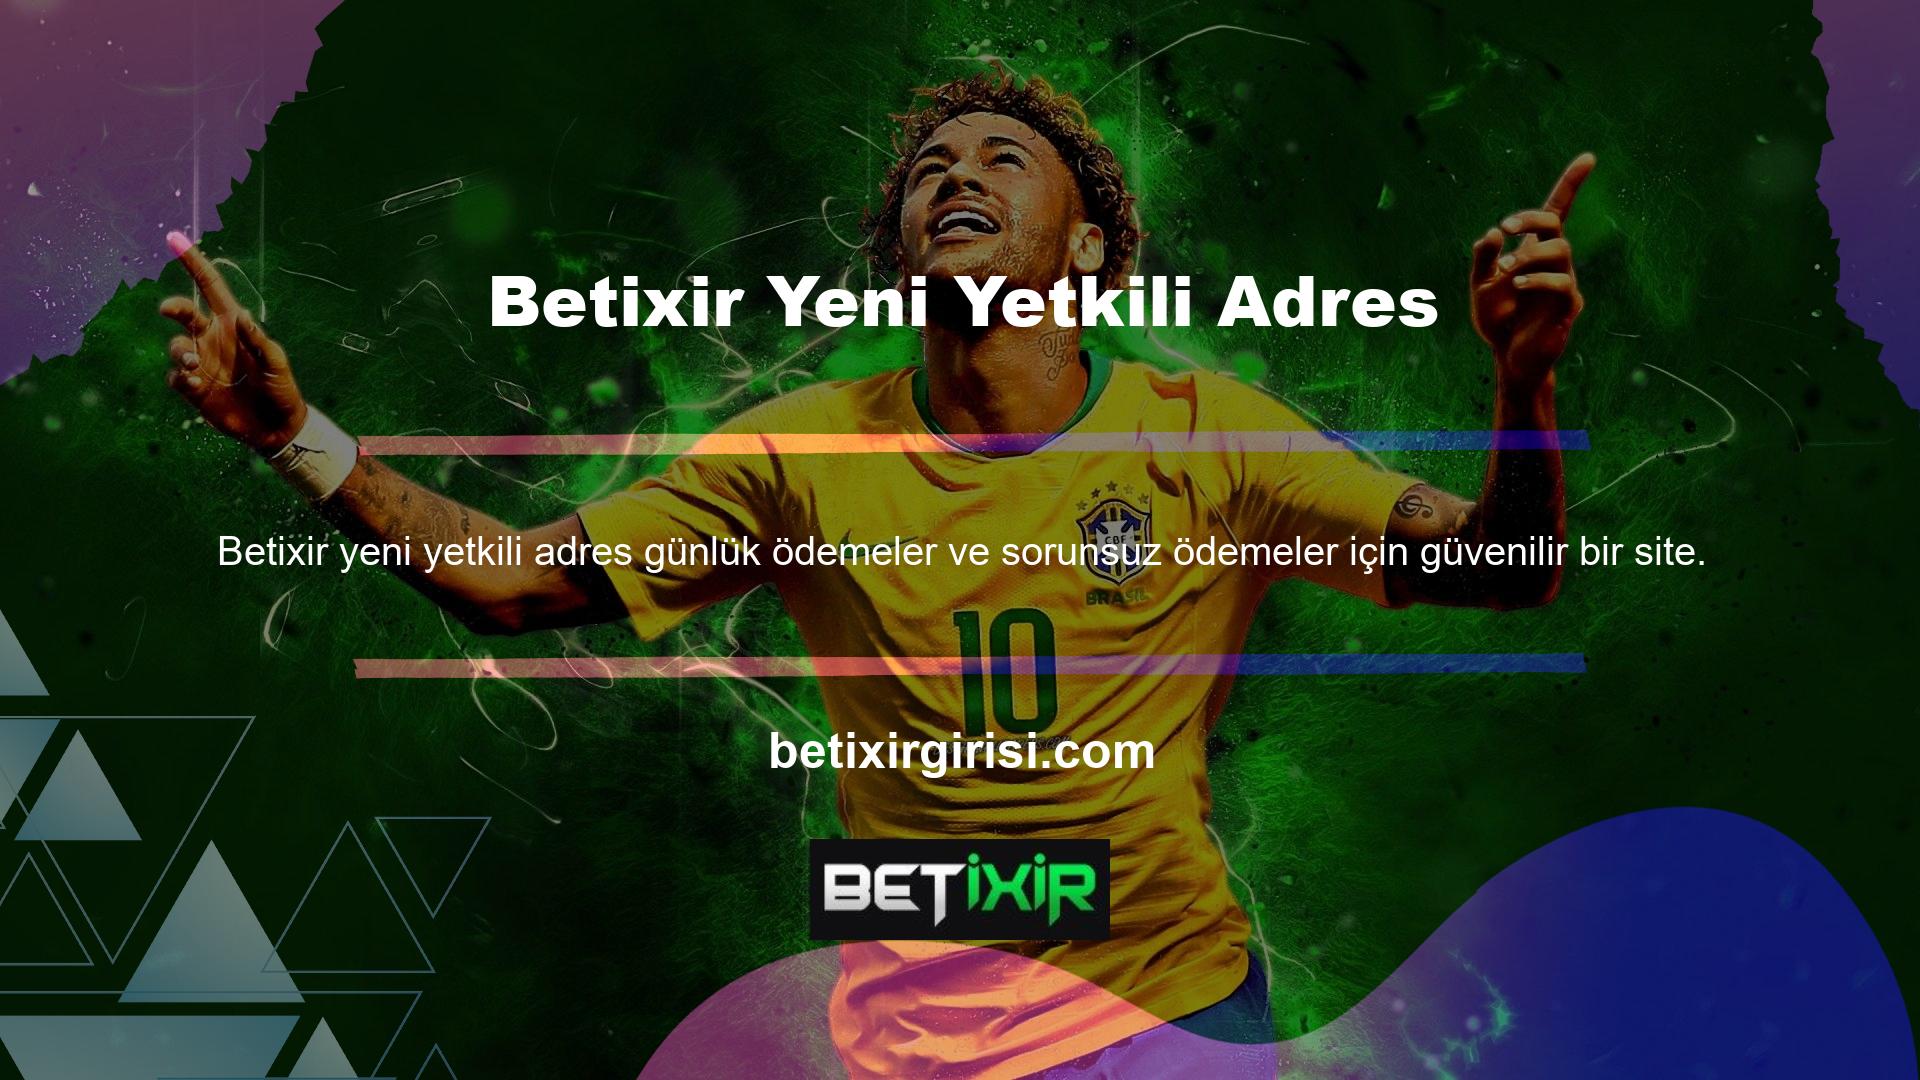 Herhangi bir şikayet veya kötü geri bildirim olmadan Betixir yeni adres web sitesine kaydolmanın iki yolu vardır